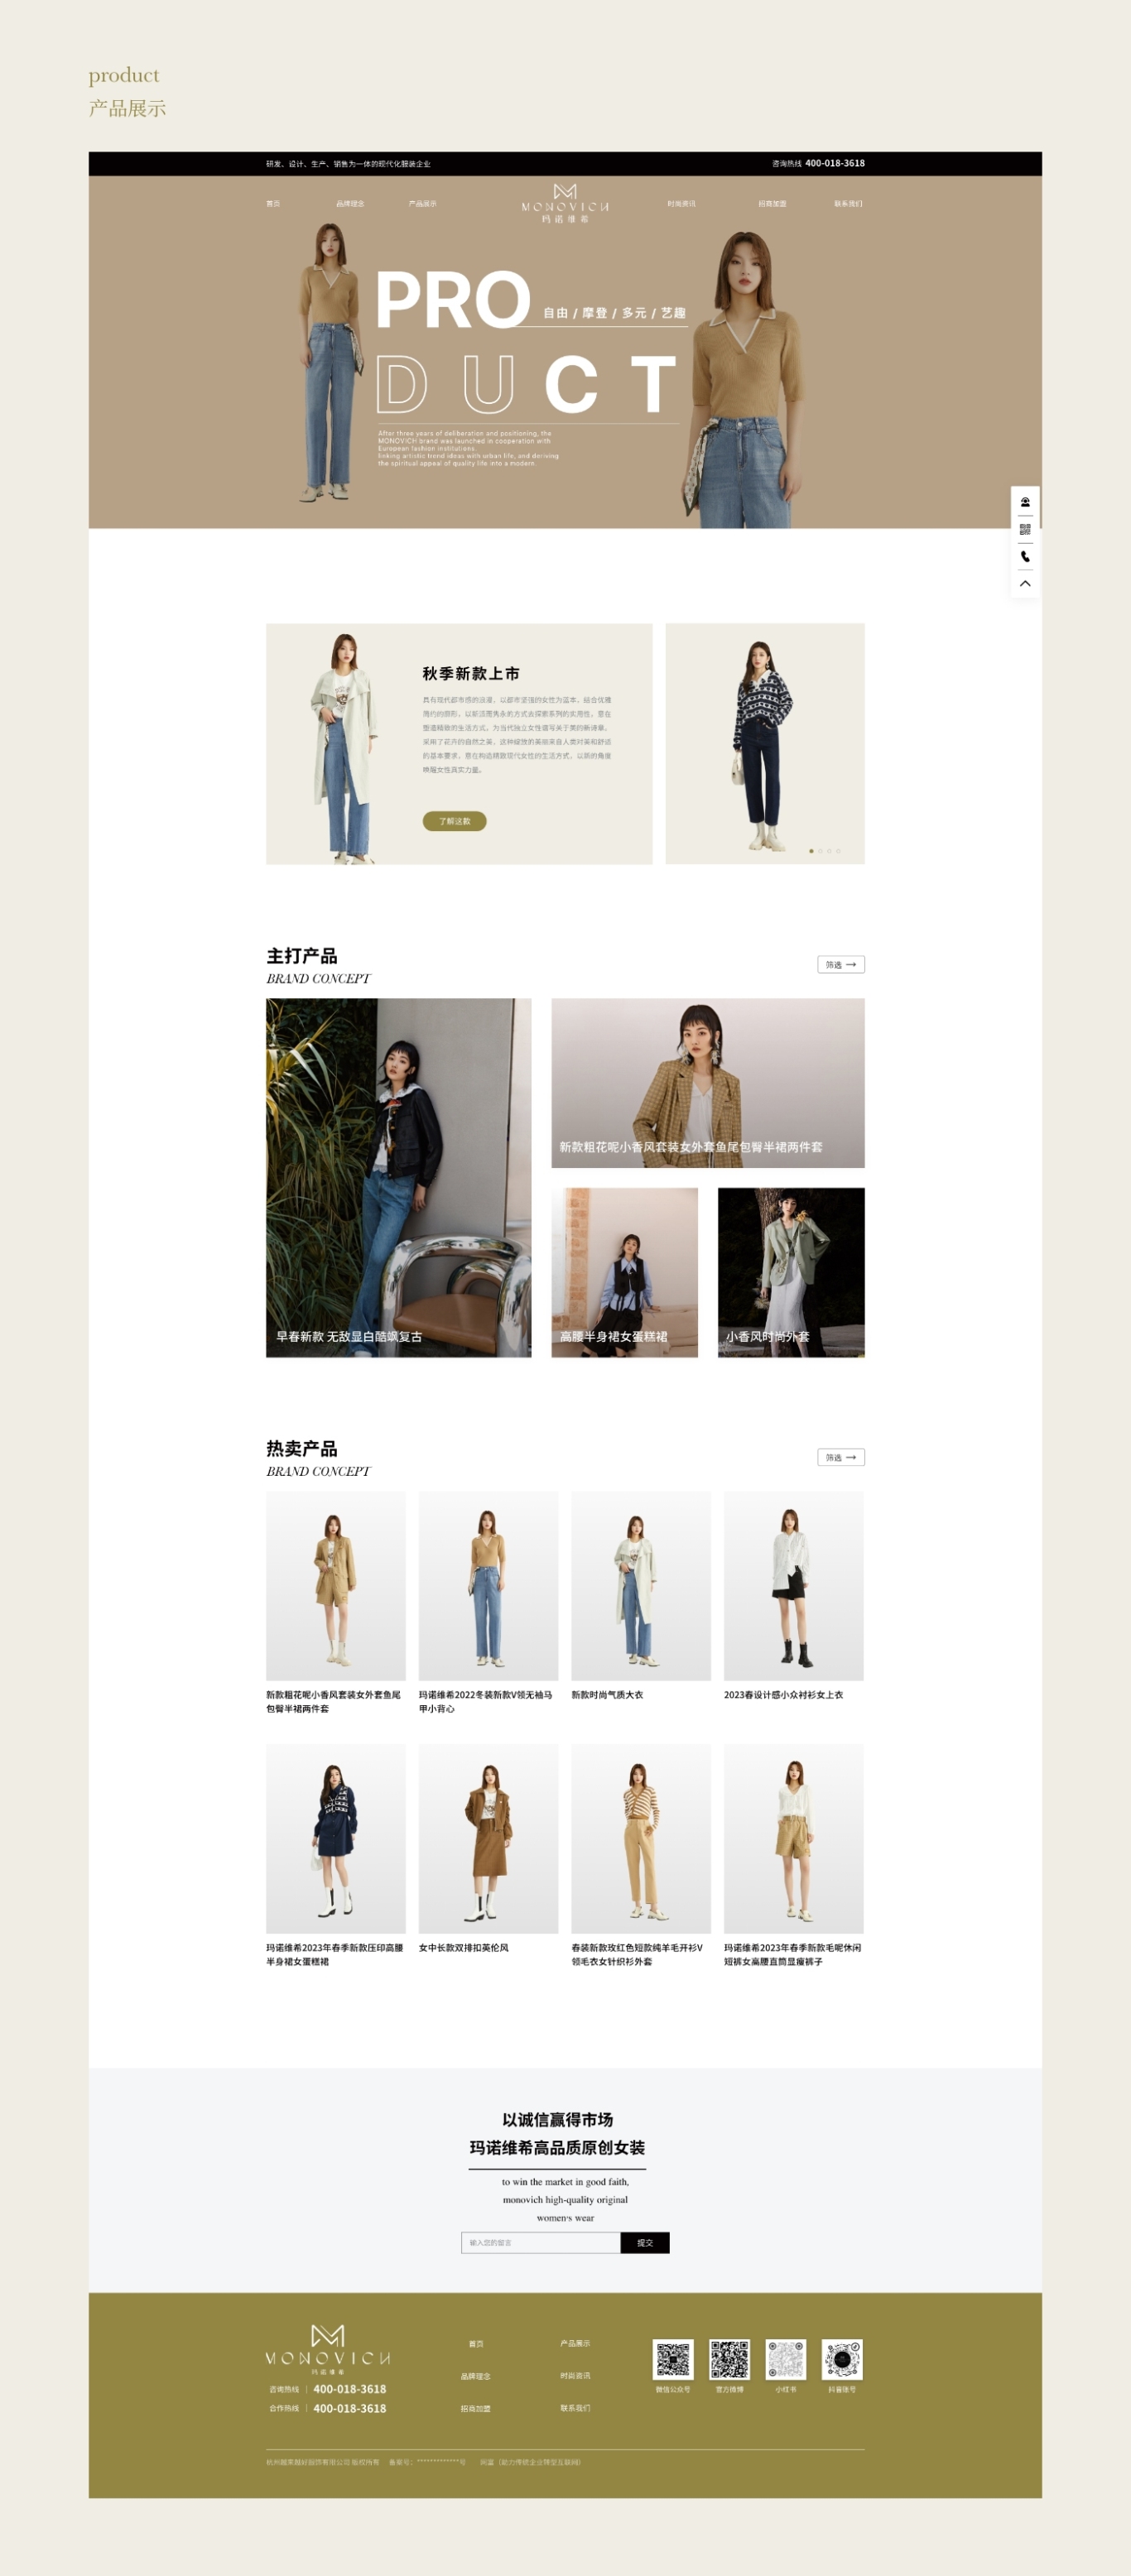 UI/UIX 瑪諾維希女裝品牌 網頁設計圖3